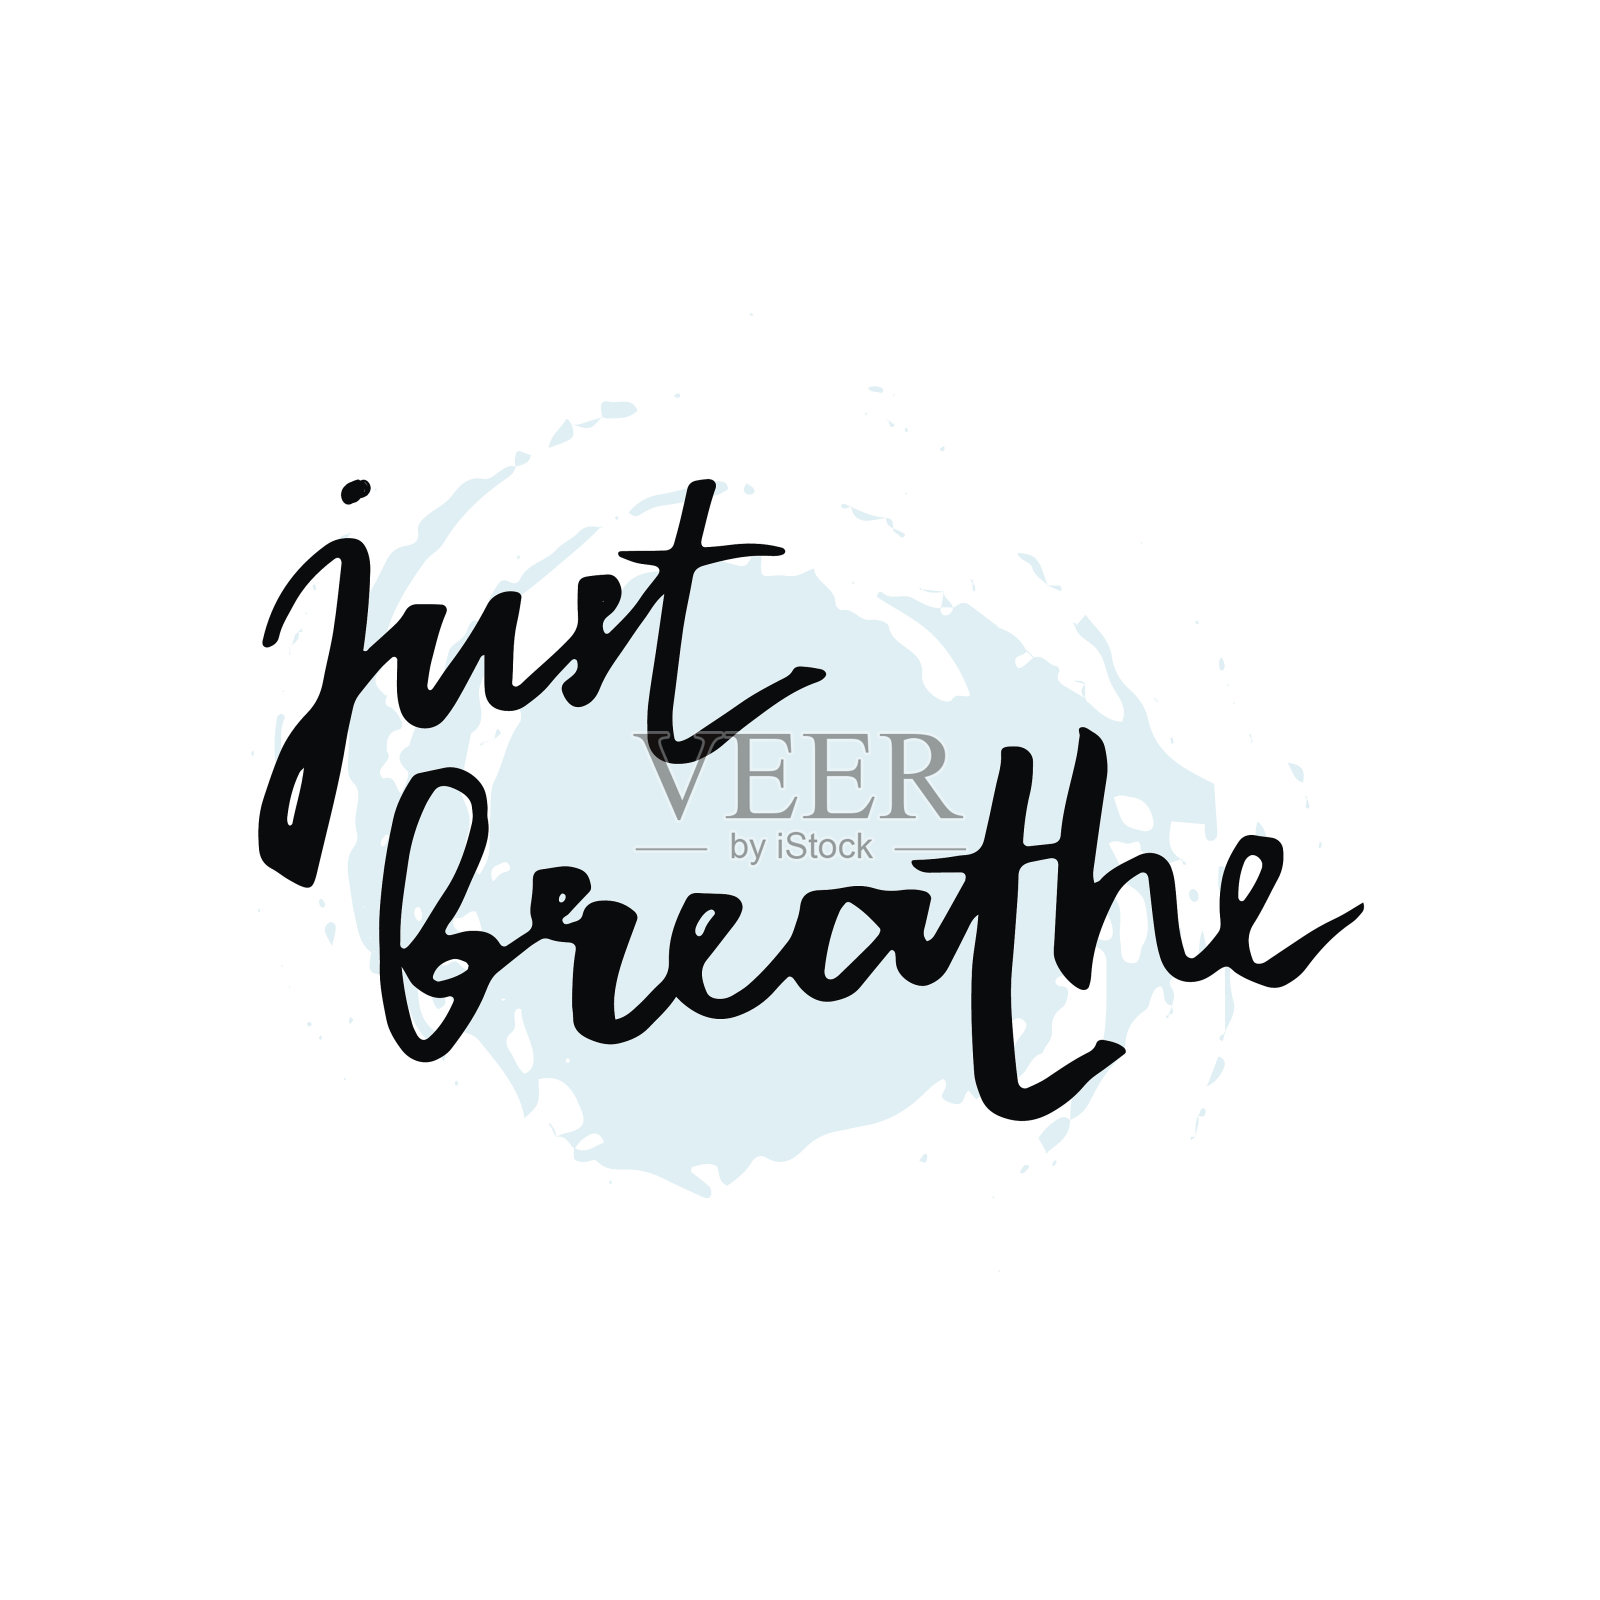 简单呼吸就好。鼓舞人心的文字引用。插画图片素材